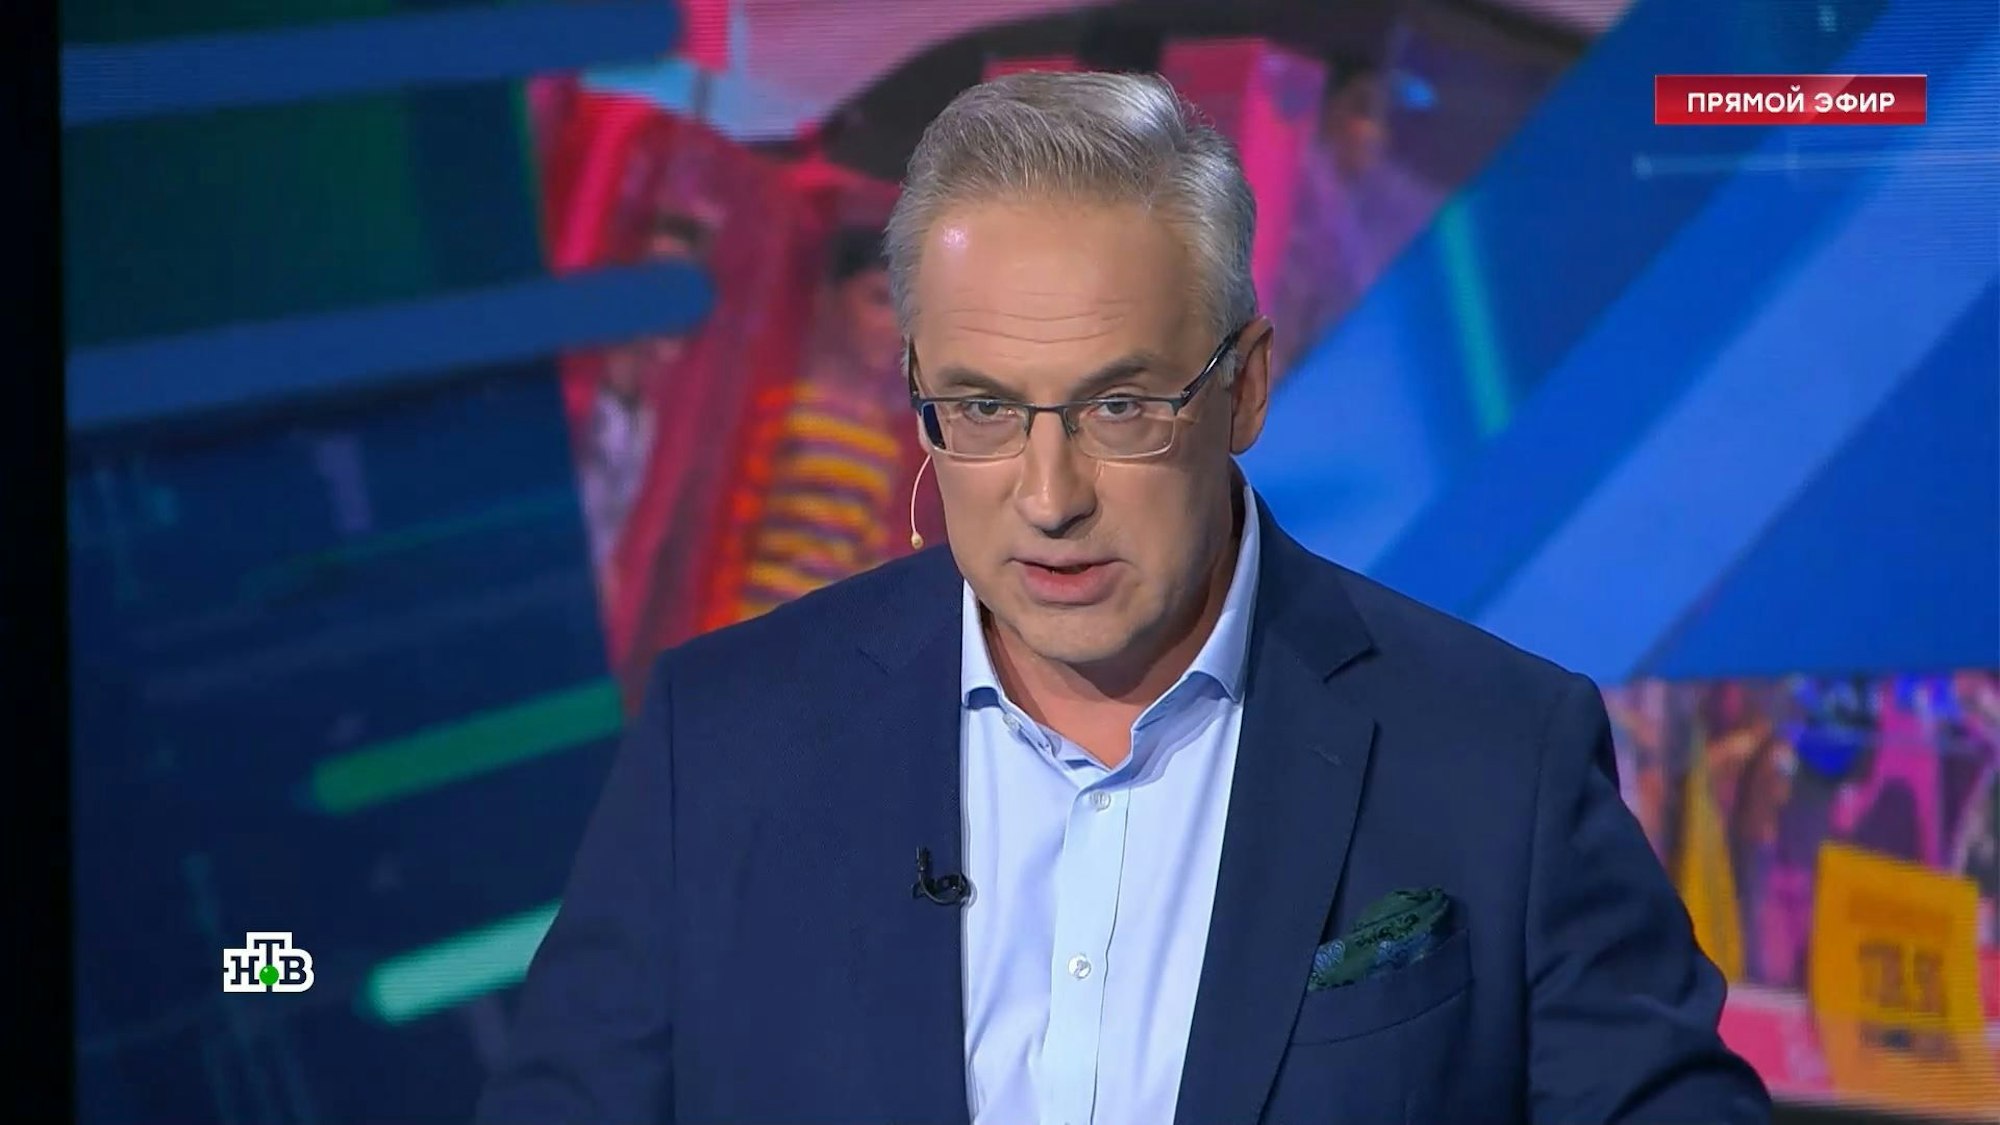 Andrey Norkin, russischer TV-Moderator im Sender NTV, hetzt in seiner Talksendung "Treffpunkt" gegen den Hollywood-Film "Barbie".